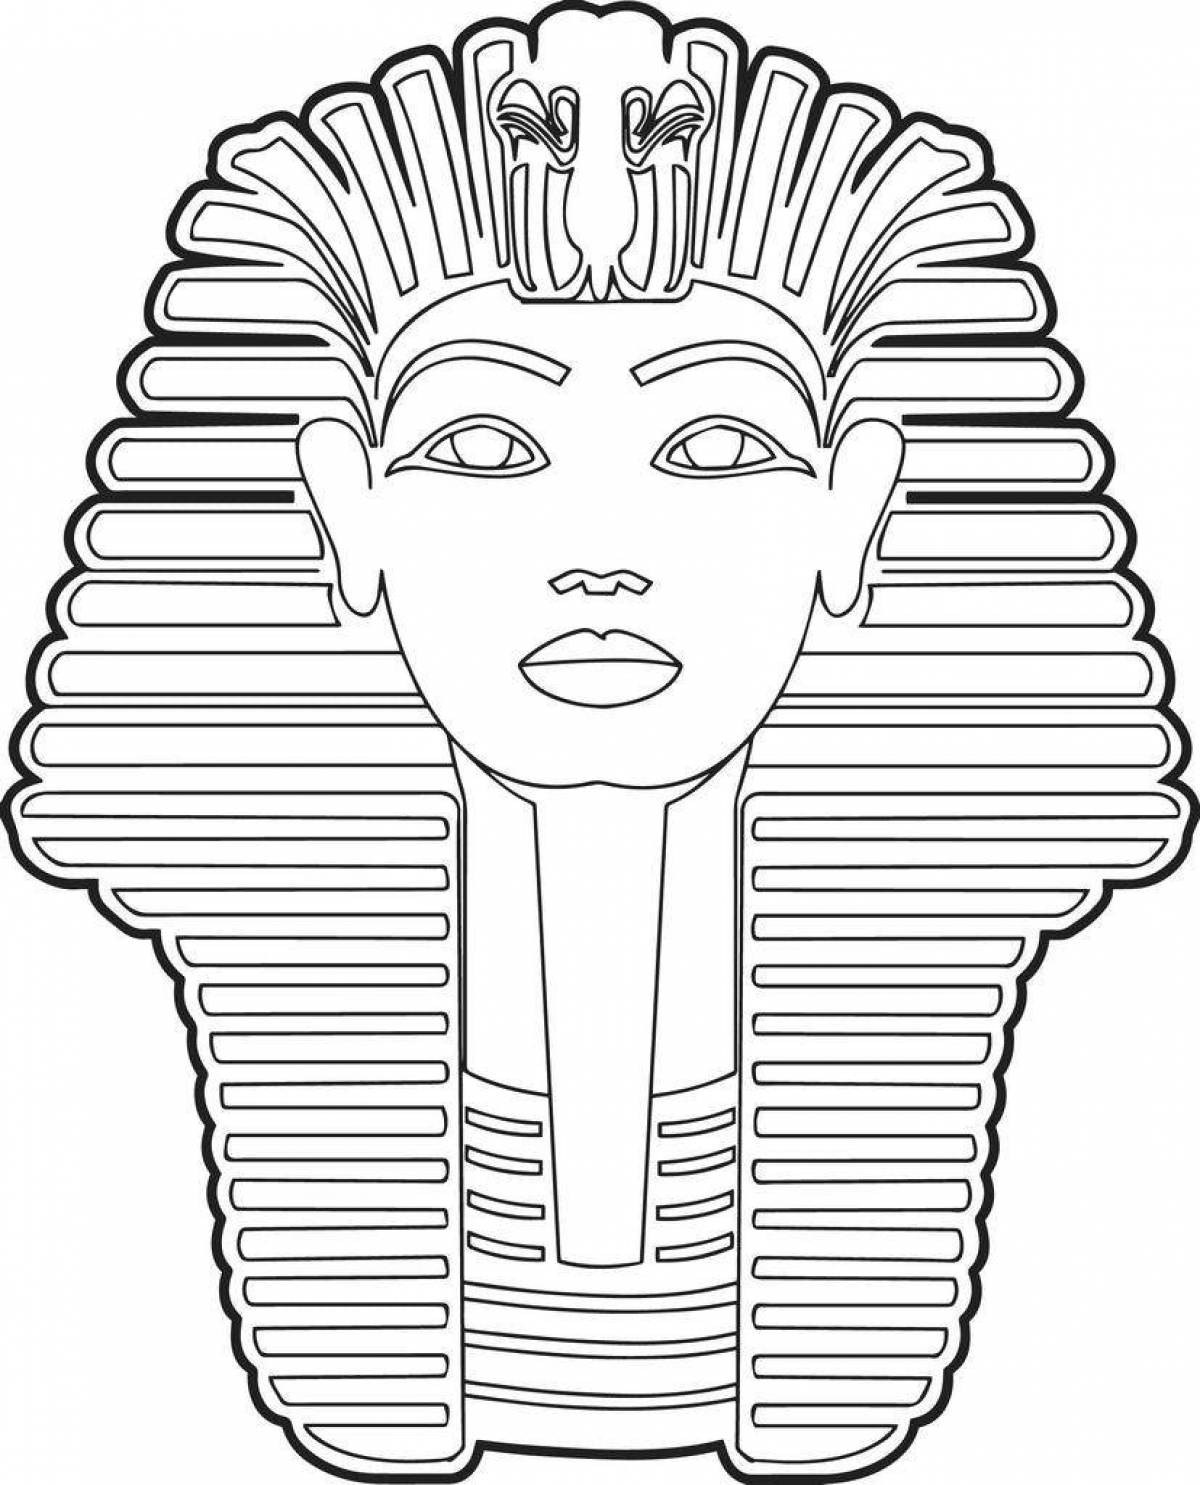 Маска фараона Тутанхамона раскраска